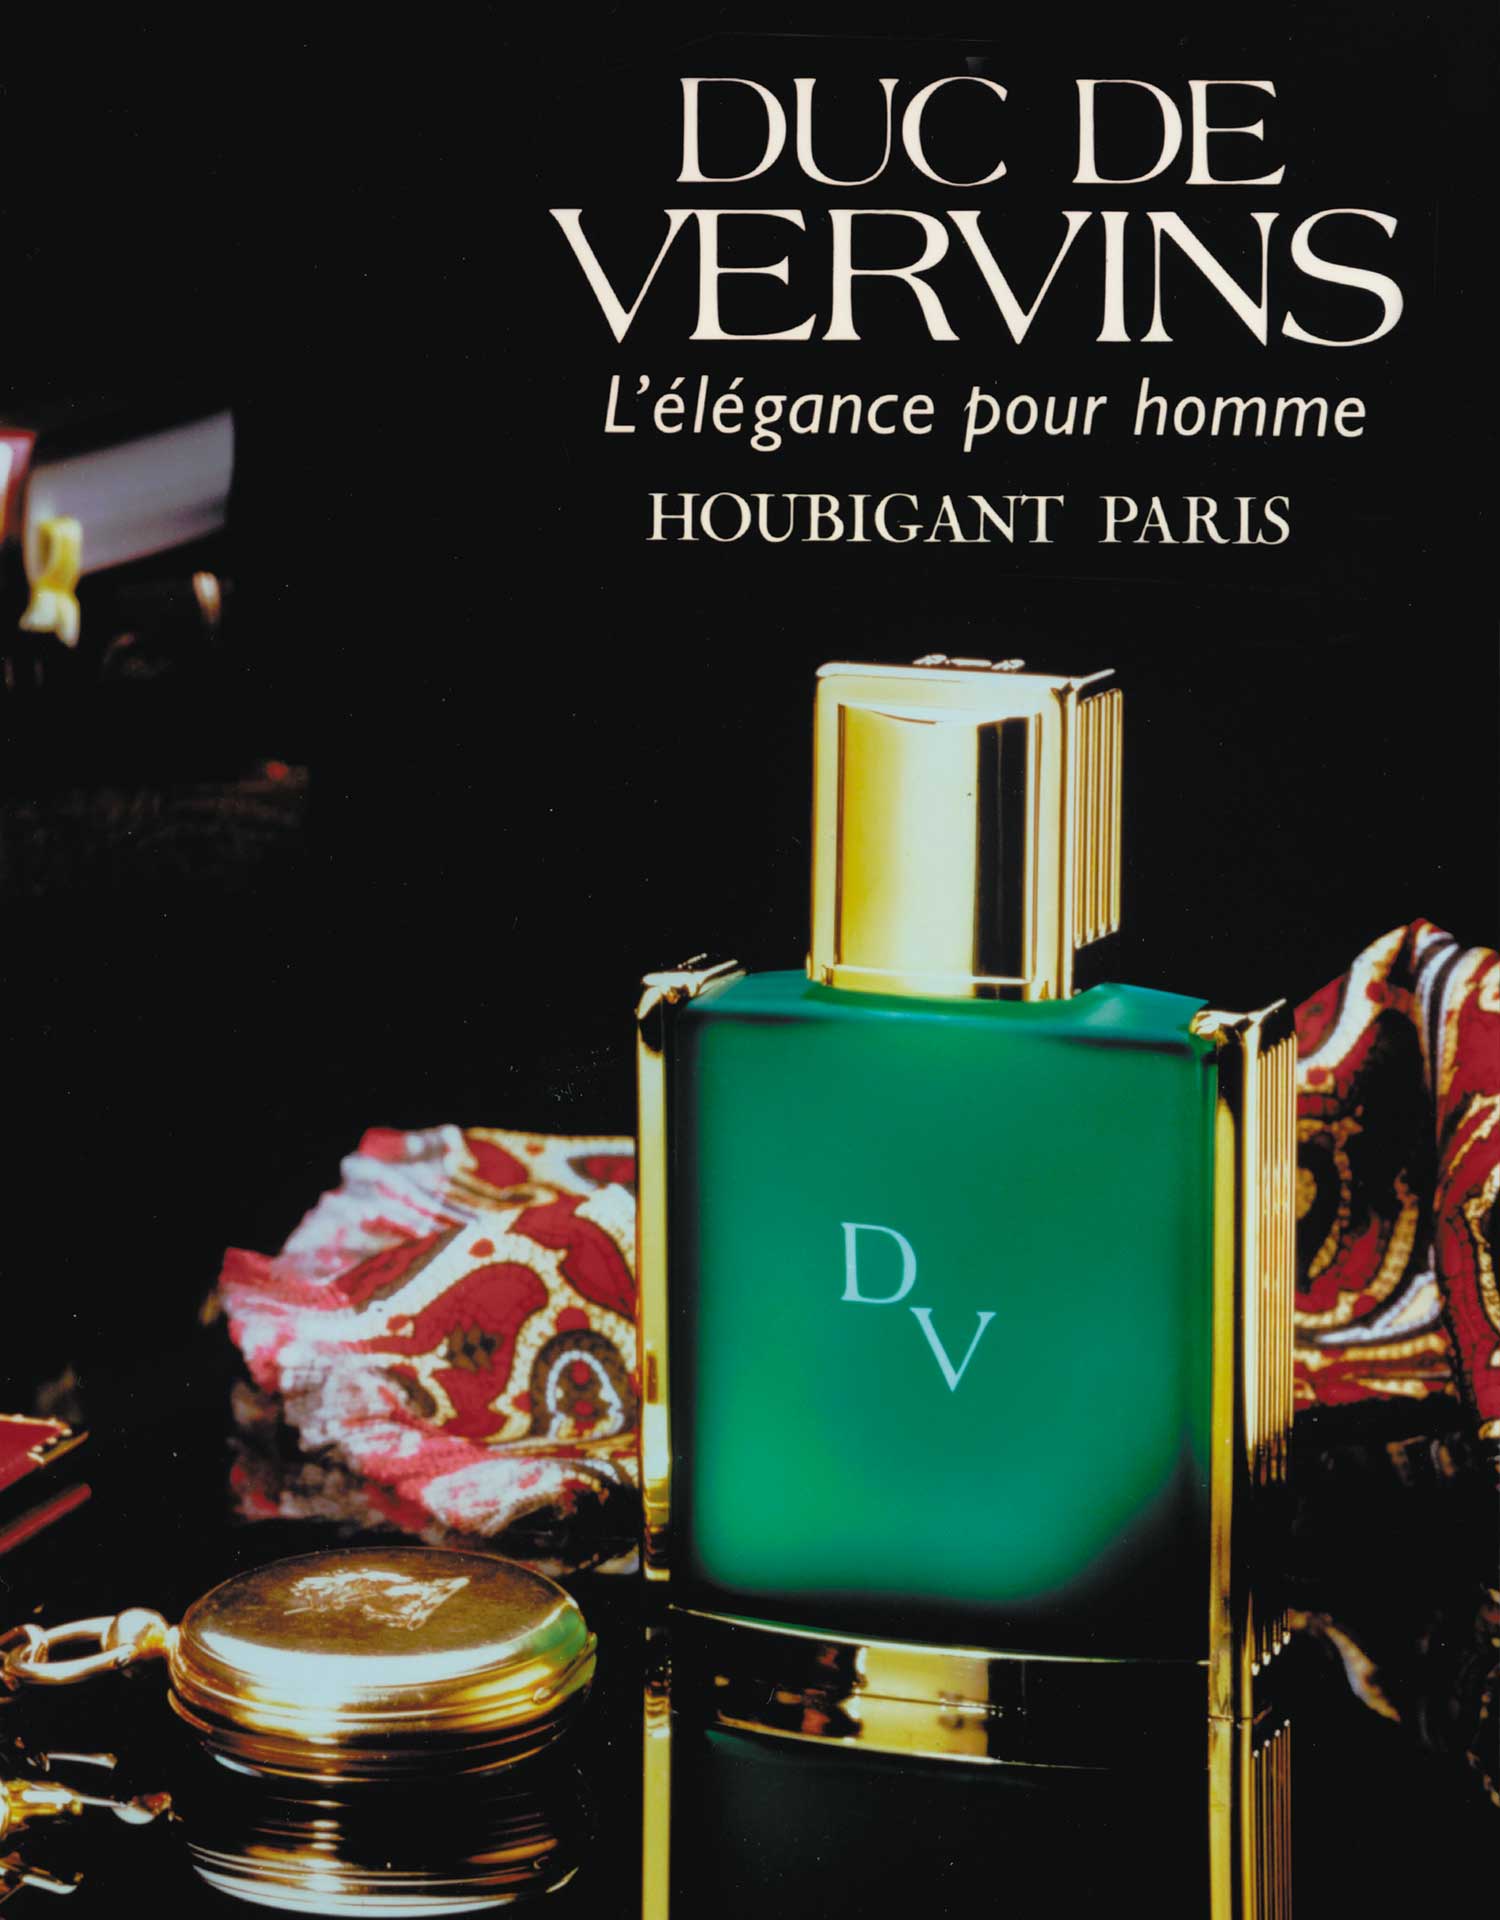 Duc de Vervins Eau de Parfum Houbigant Paris